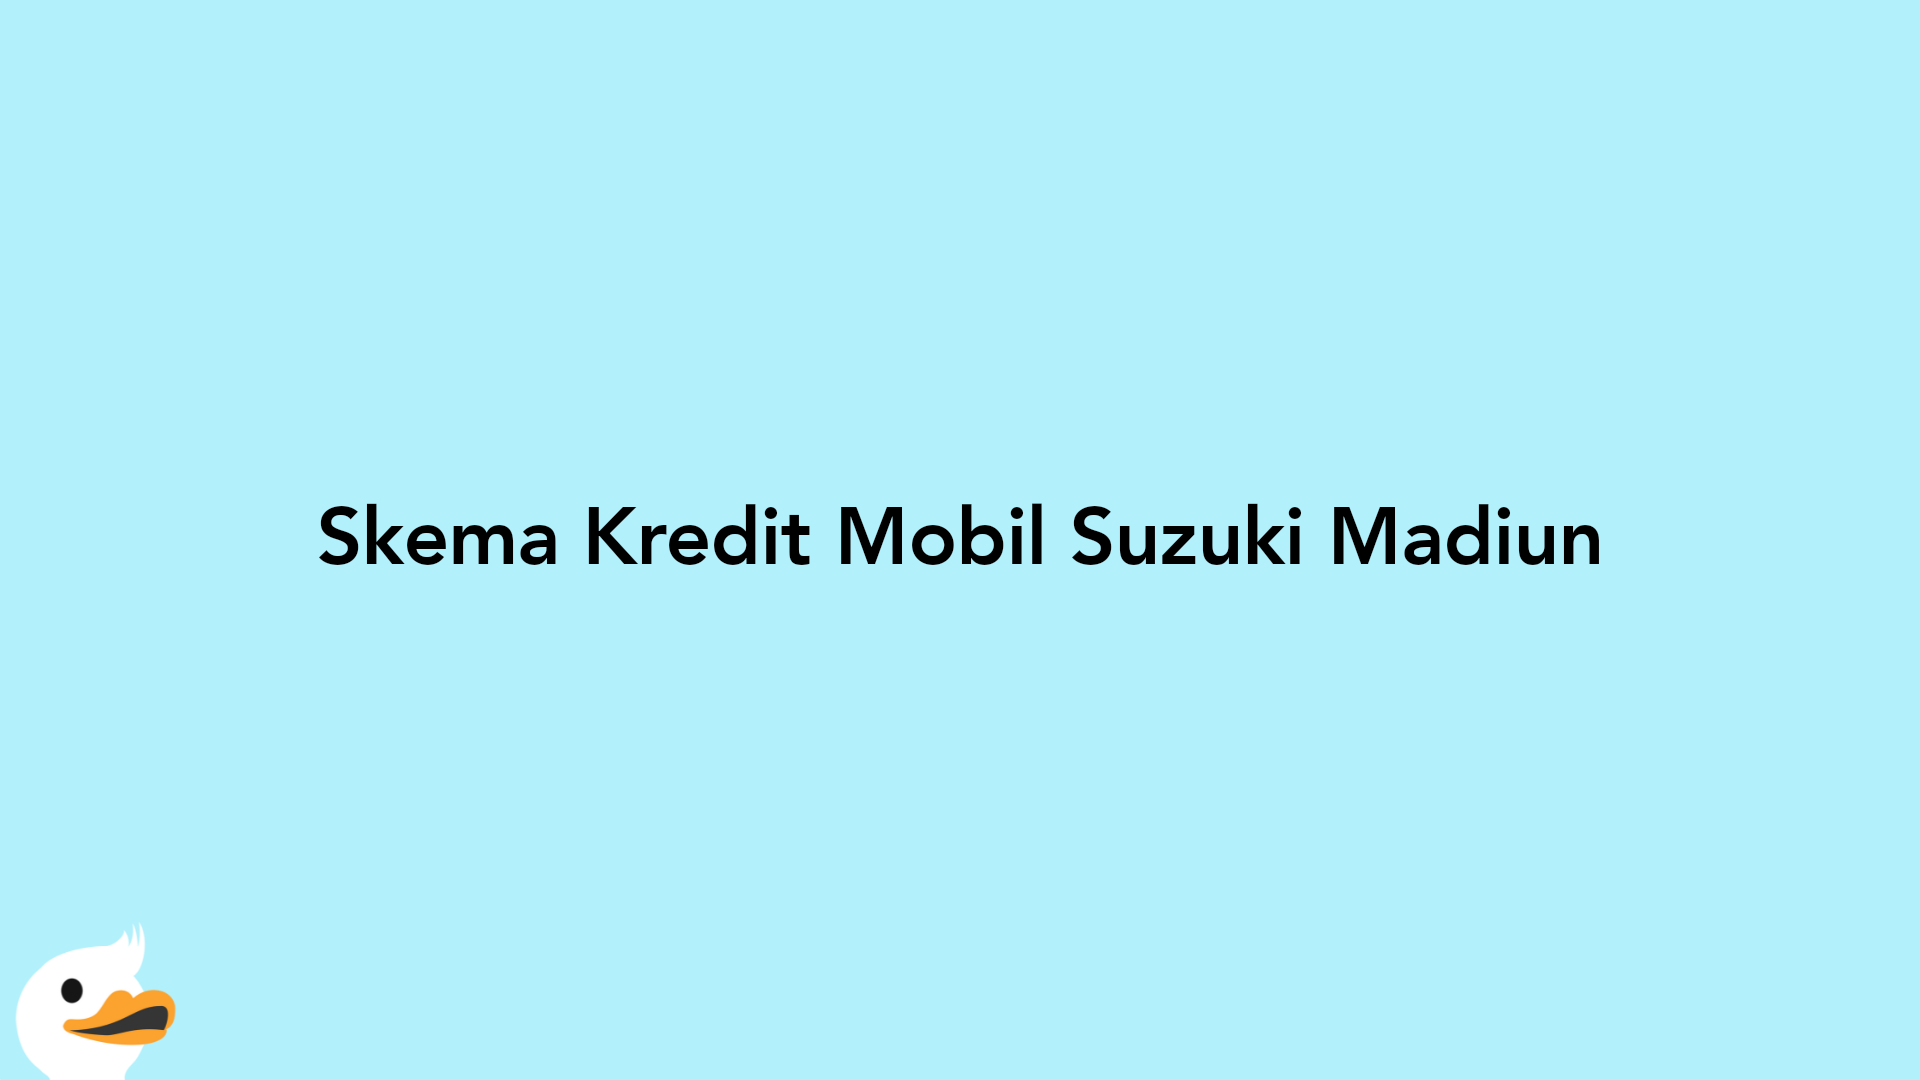 Skema Kredit Mobil Suzuki Madiun